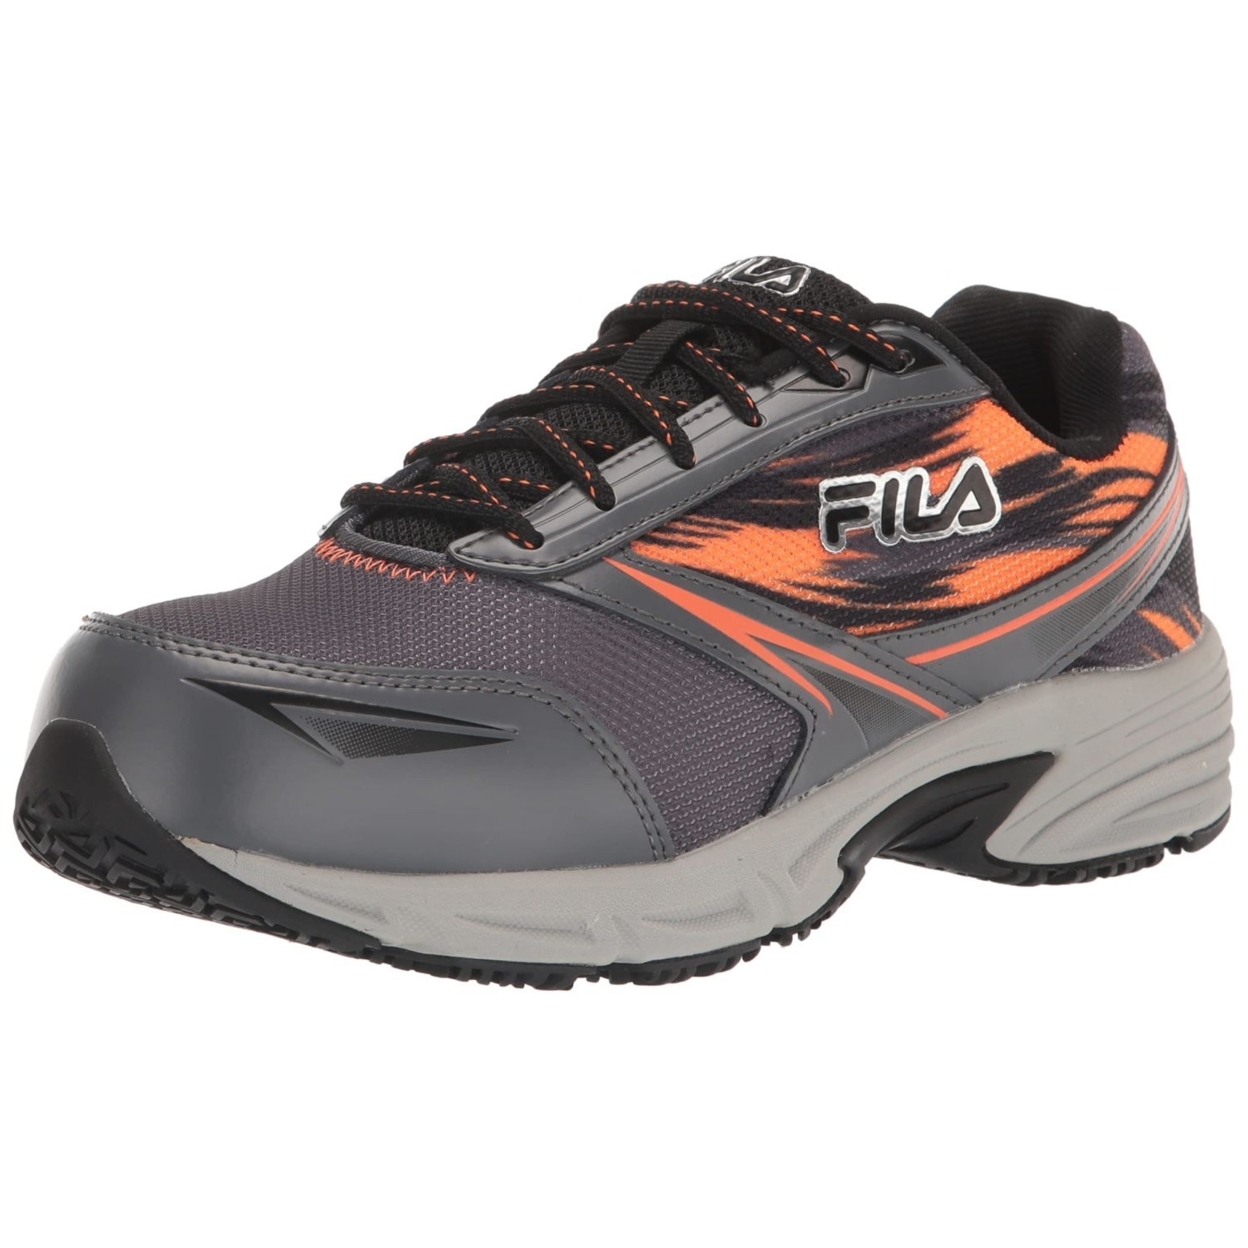 Fila Menâs Memory Meiera 2 Slip Resistant And Composite Toe Work Shoe CSRK/BLK/VORN - CSRK/BLK/VORN, 7